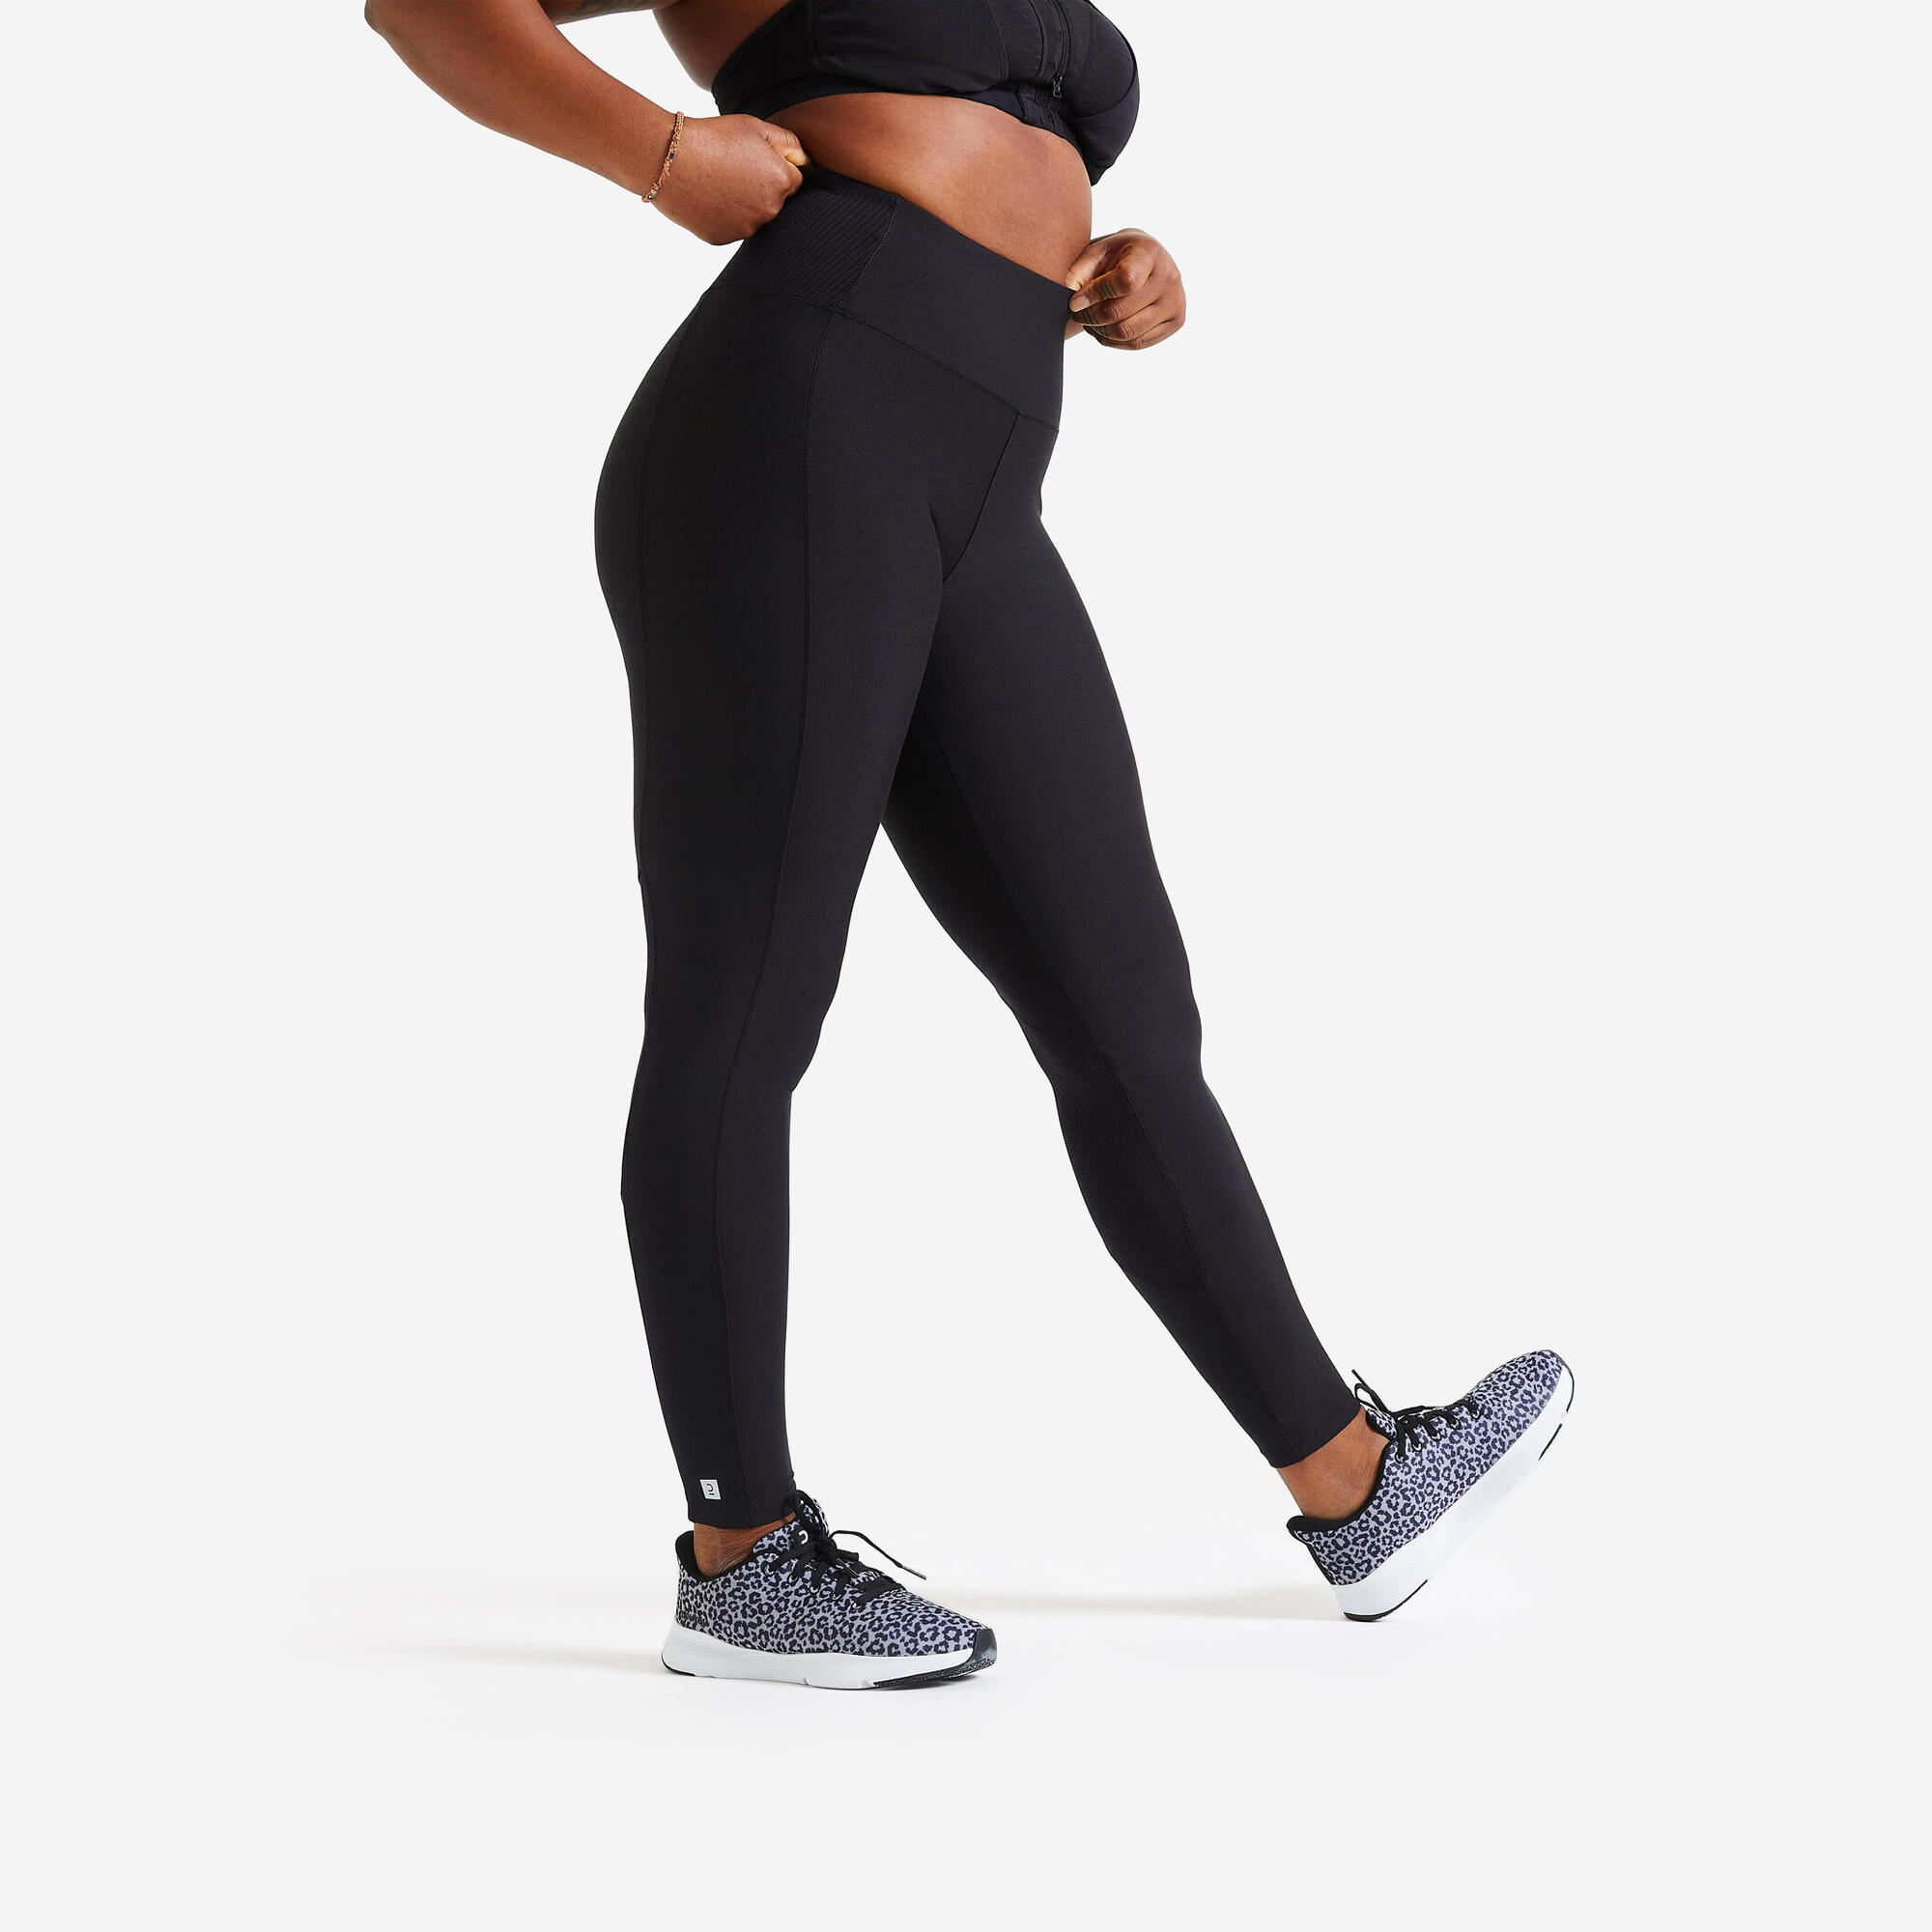 Legging à taille haute femme – 500 - Noir, Noir - Domyos - Décathlon